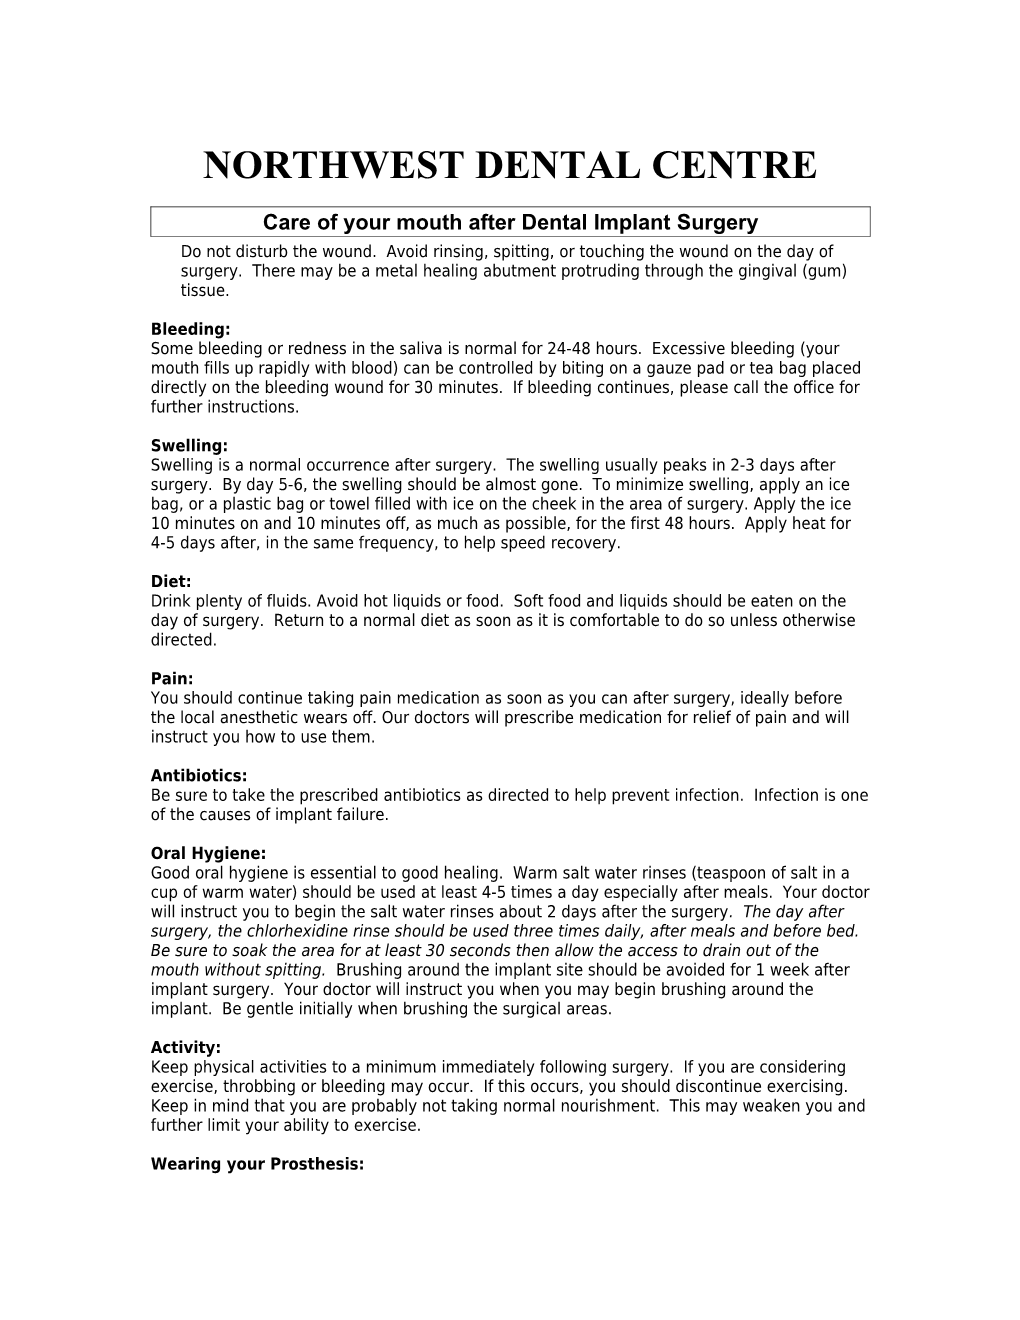 Northwest Dental Centre